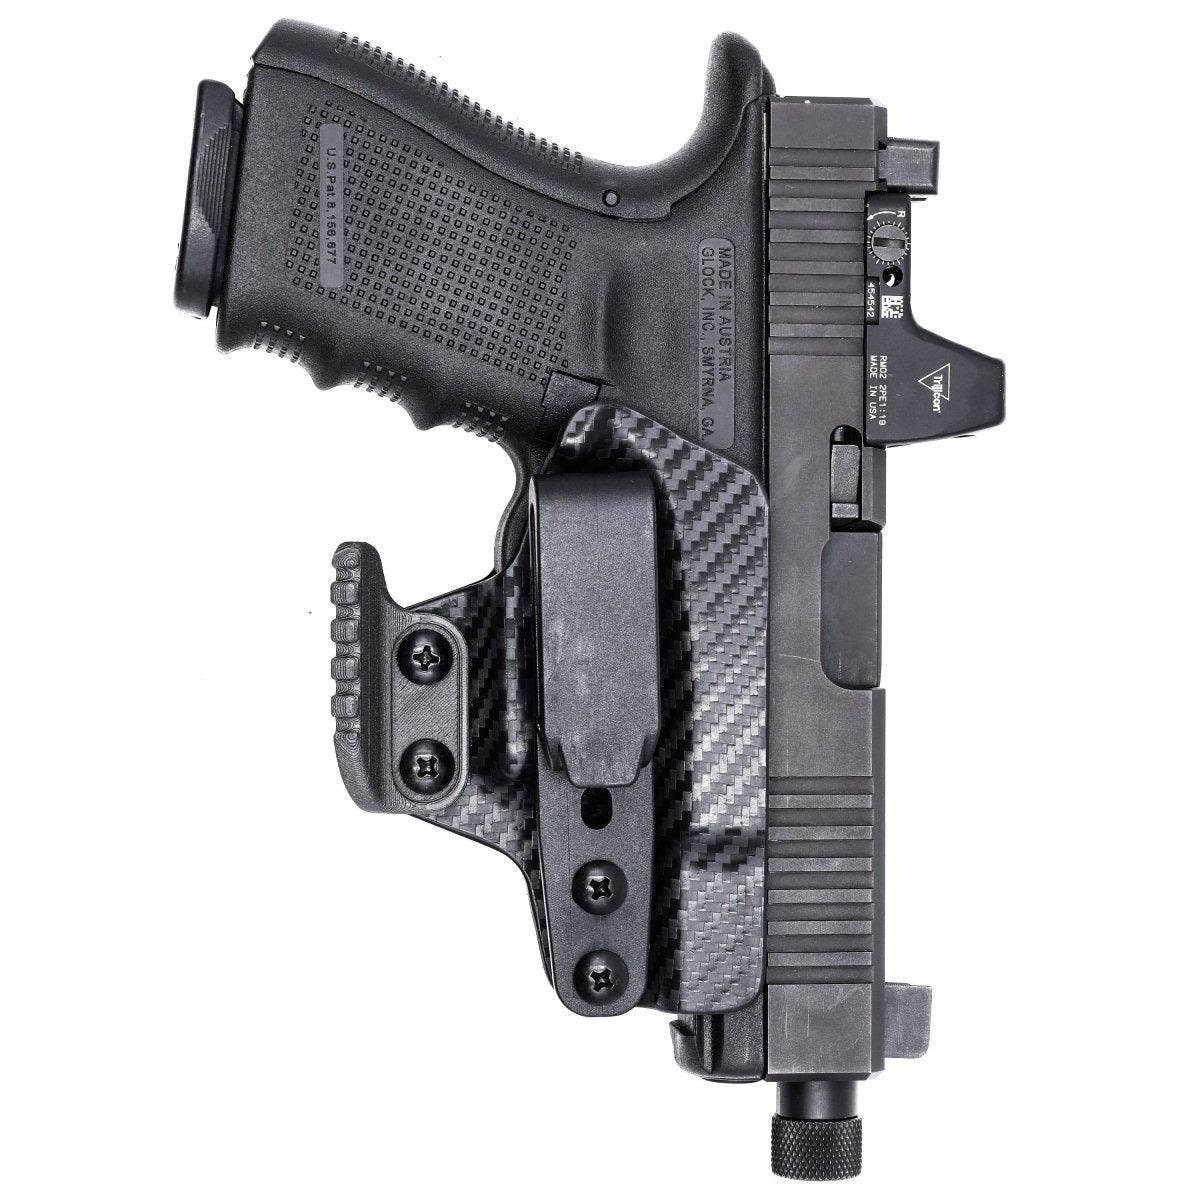 Light Bearing Duty Holster Fit Glock 17 Glock 19 17L 17C 22 31 23 32 Gen4  gen5